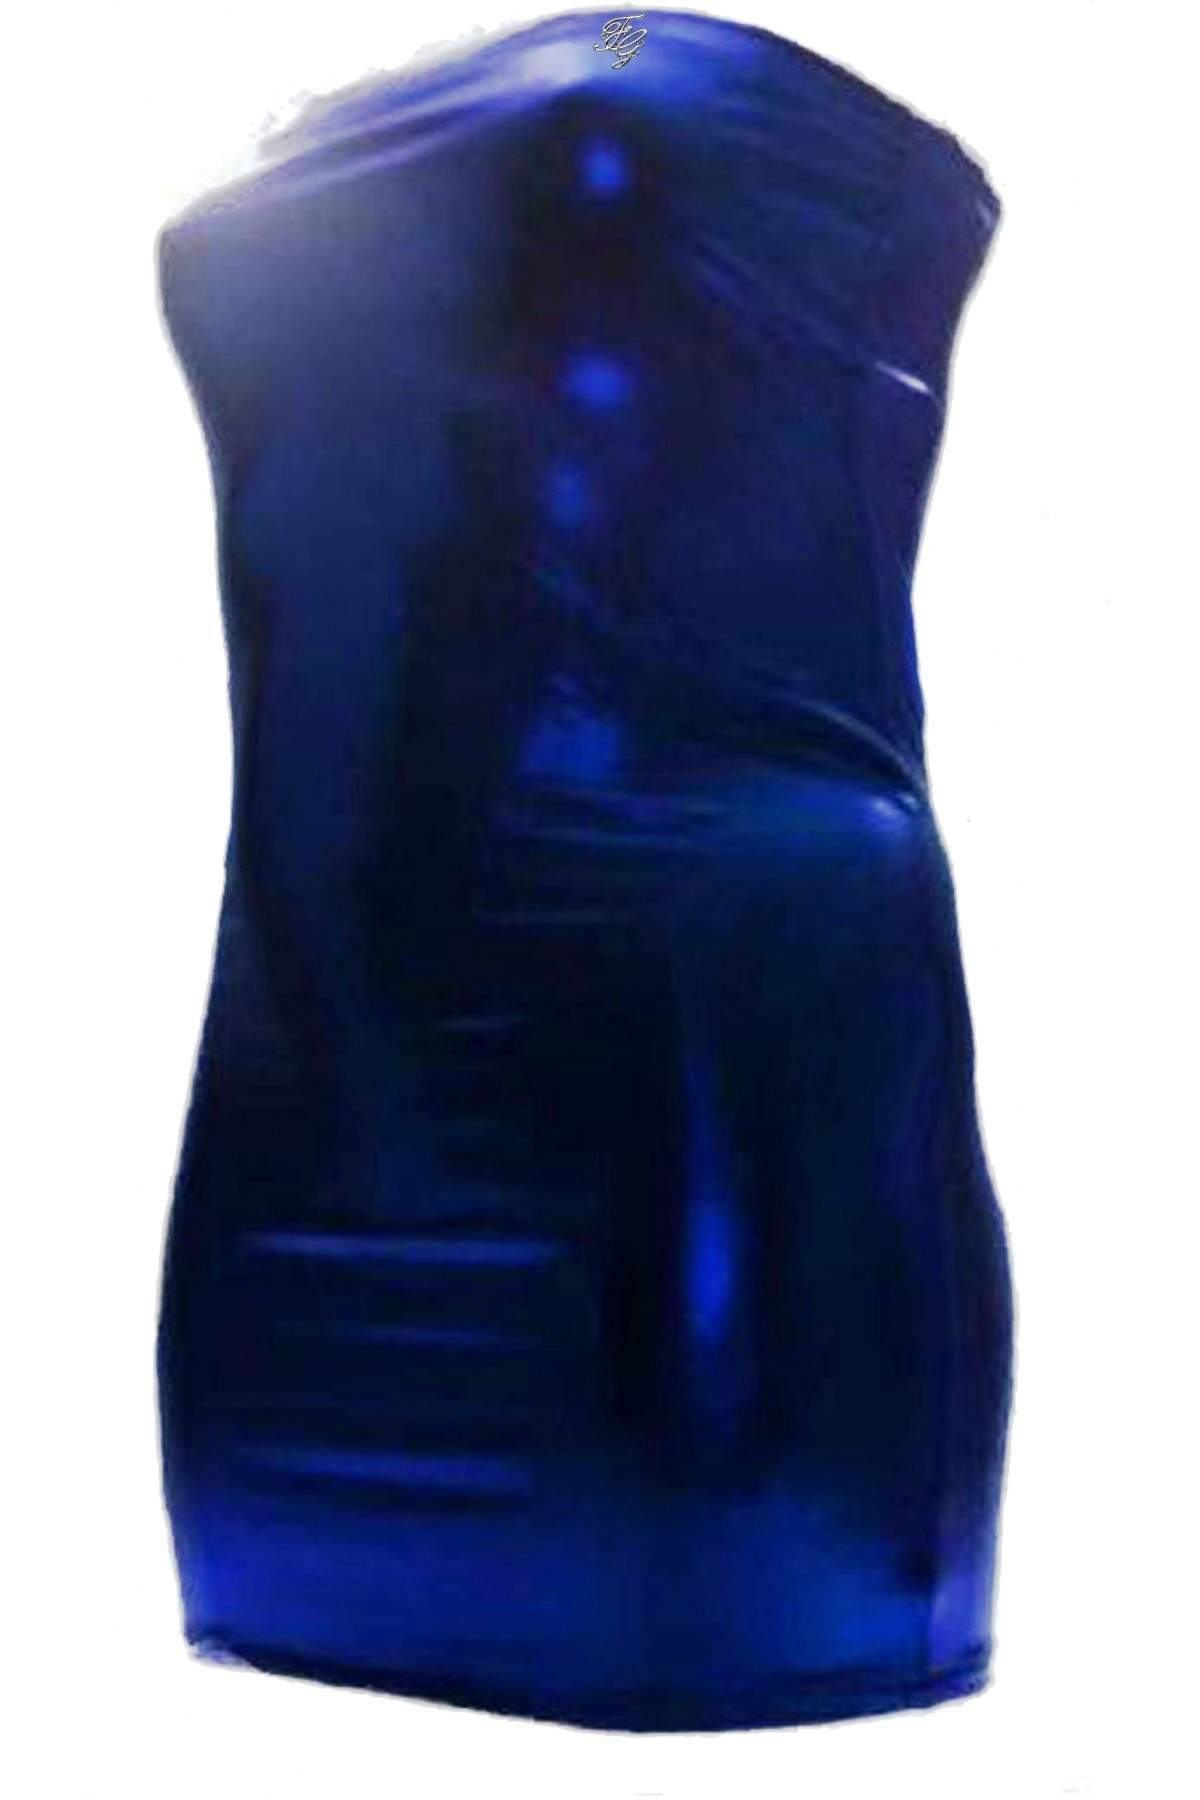 Leather Look Blue Big Size Bandeau Dress - Deutsche Produktion